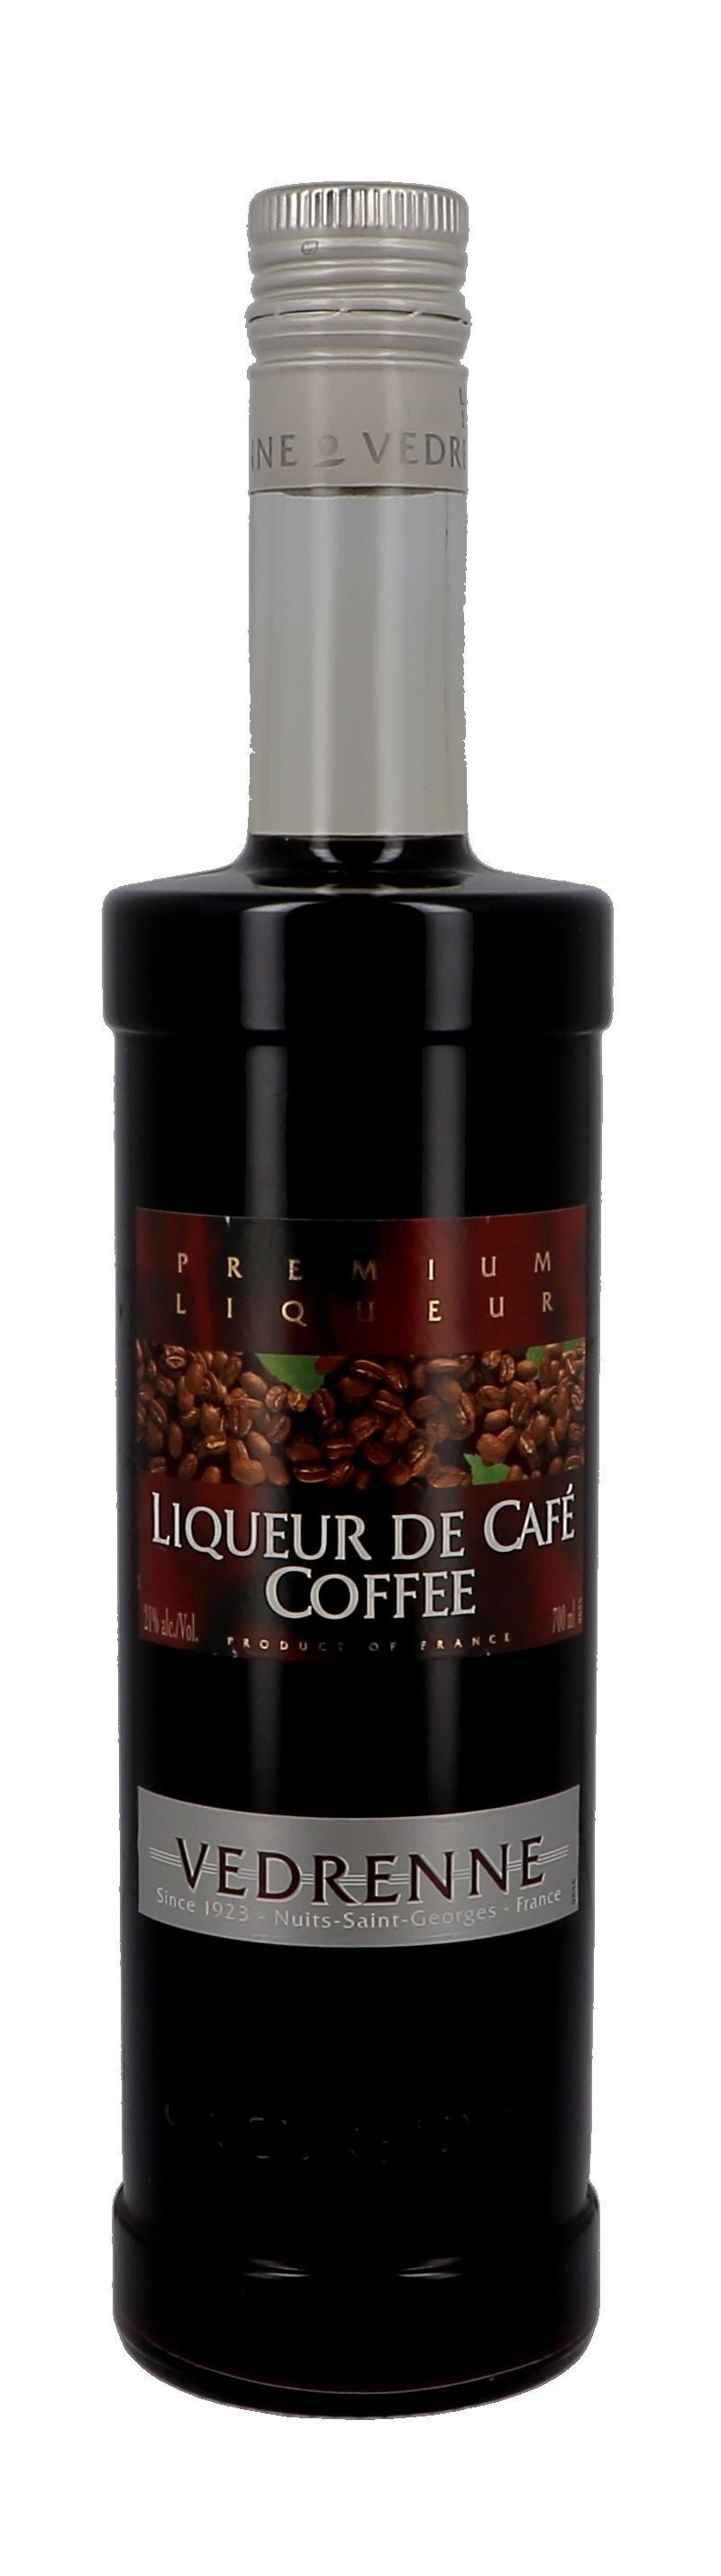 Vedrenne Liqueur de Café 70cl 21% Coffee Liqueur